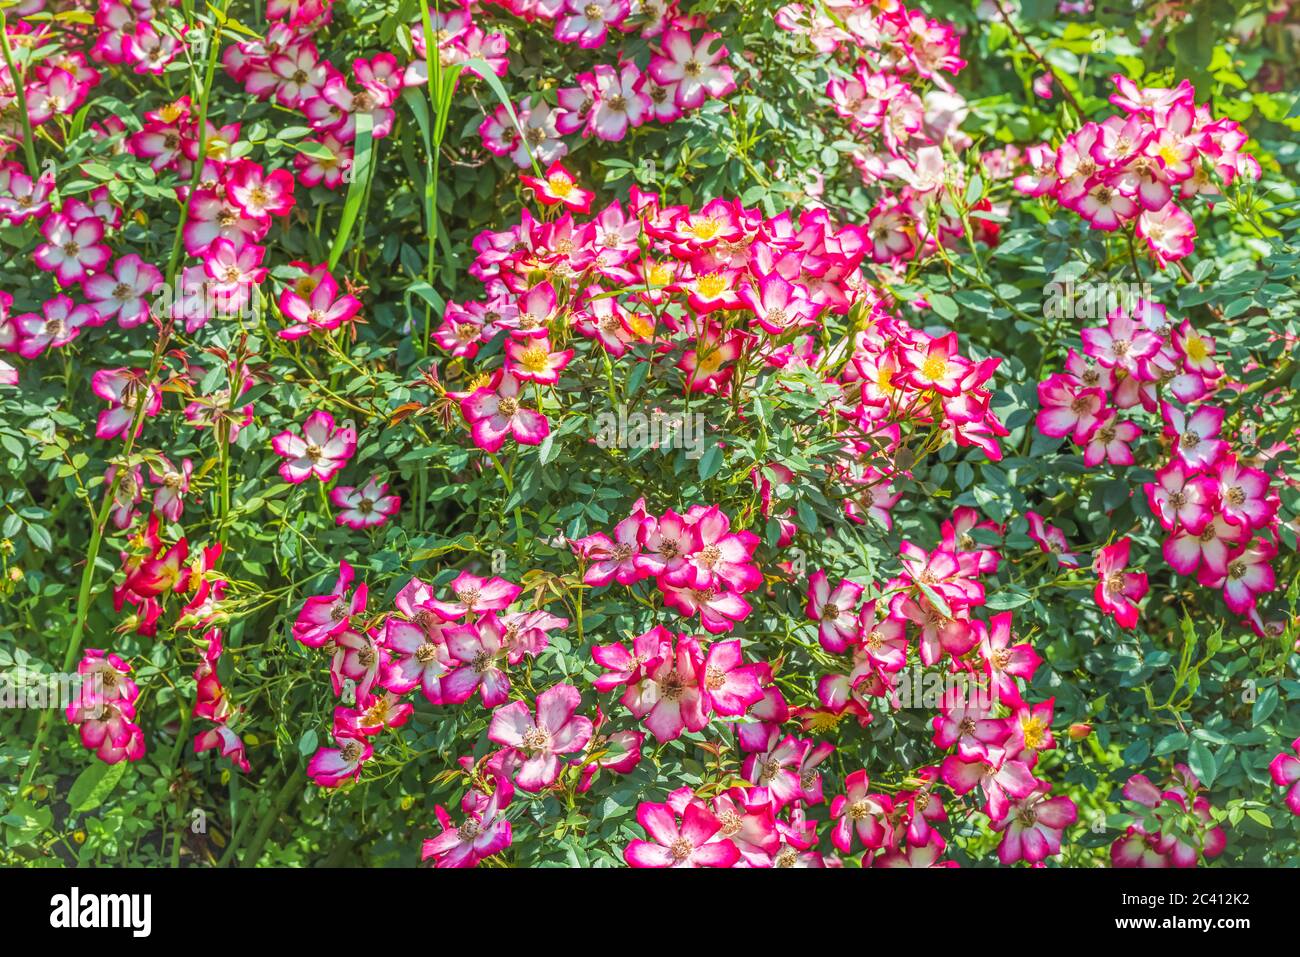 Un frammento di una vernice occhio di rosone. I fiori in fiore di un colore mostrano il loro centro, in cui è visibile uno spettro di colori contrastanti. Foto Stock